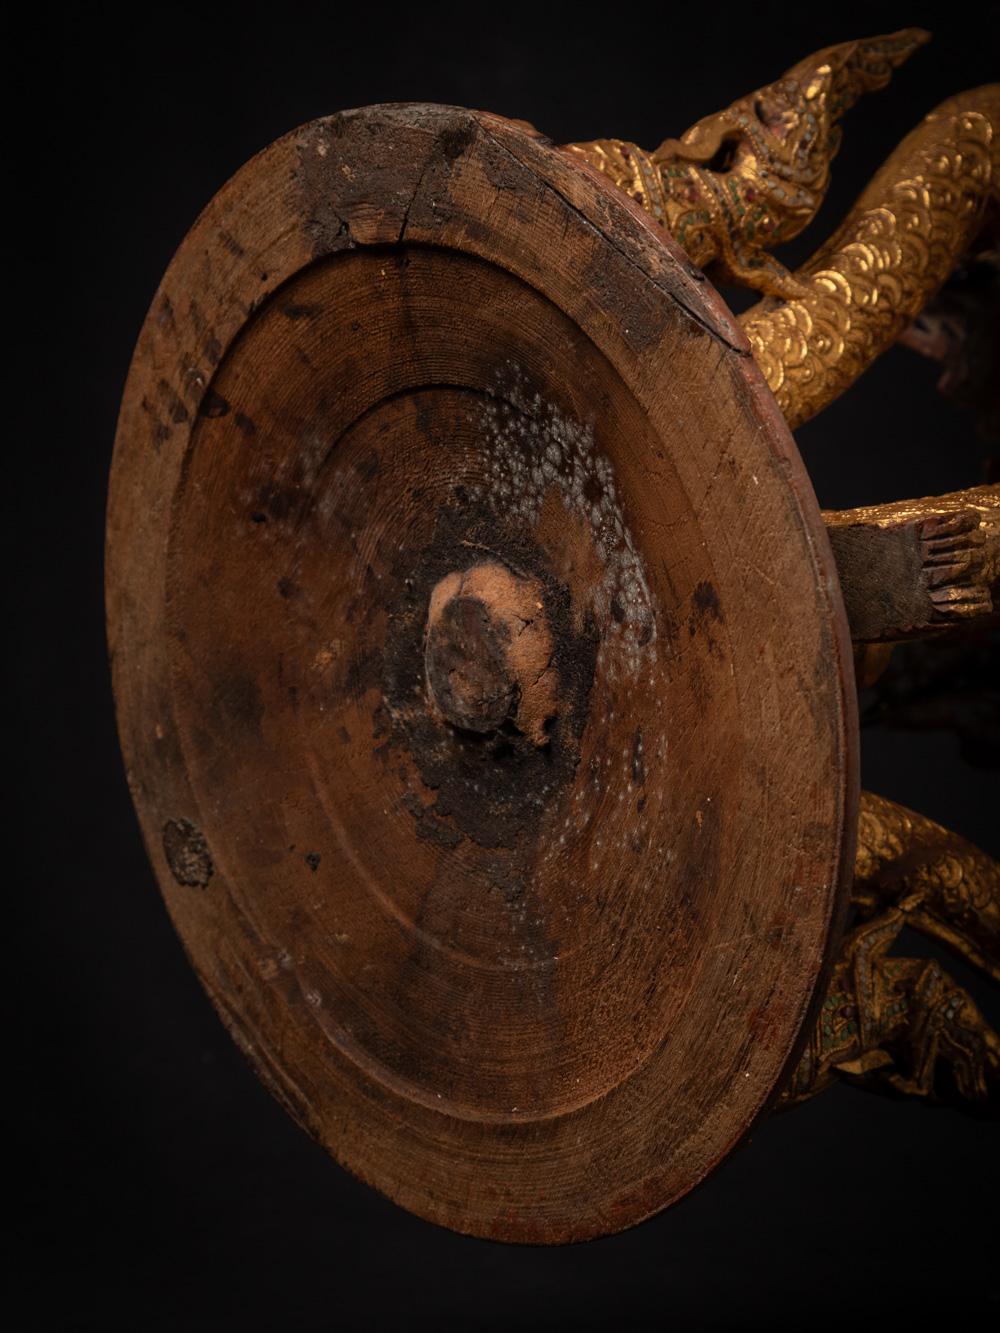 Ancien trône birman en bois - Table

Matériau : bois
63 cm de haut
37 cm de diamètre
Doré à l'or fin 24 krt.
Le style Mandalay
19ème siècle
Avec quatre serpents
Peut être utilisé comme trône pour un bouddha ou comme une sorte de table /